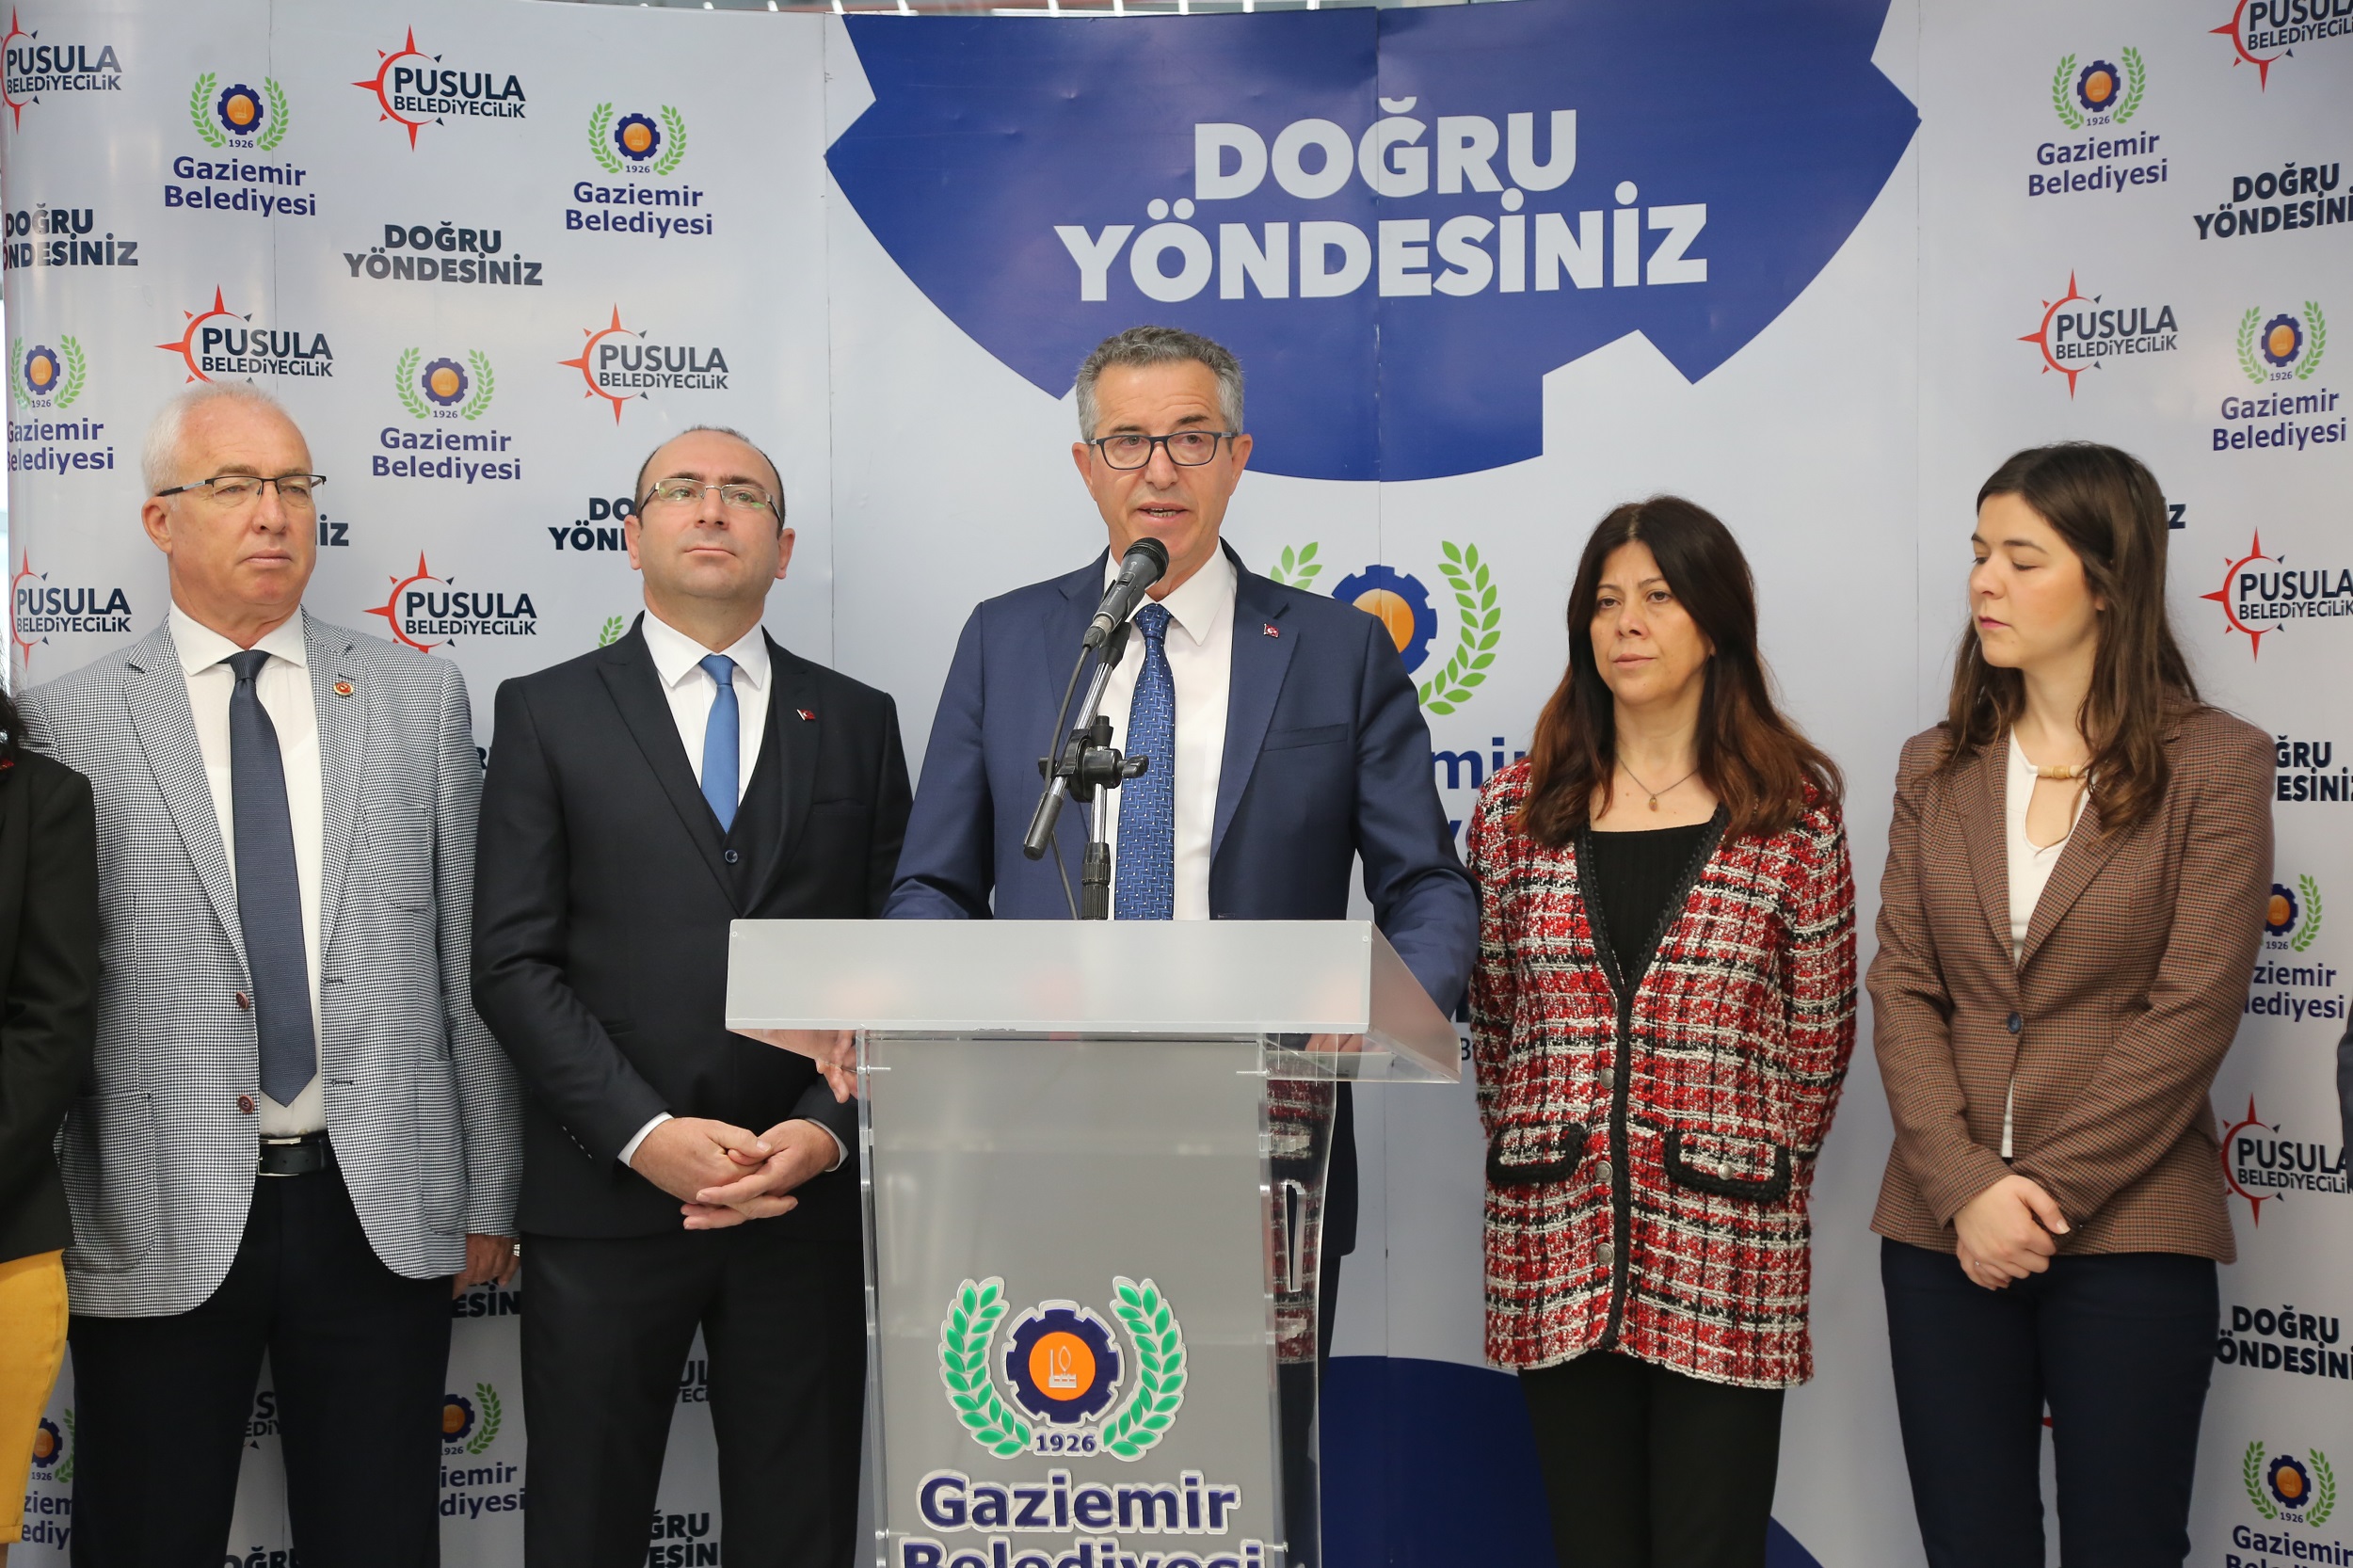 Gaziemir Belediye Başkanı Halil Arda “Büyük üzüntü içindeyiz” Gaziemir teyakkuzda!